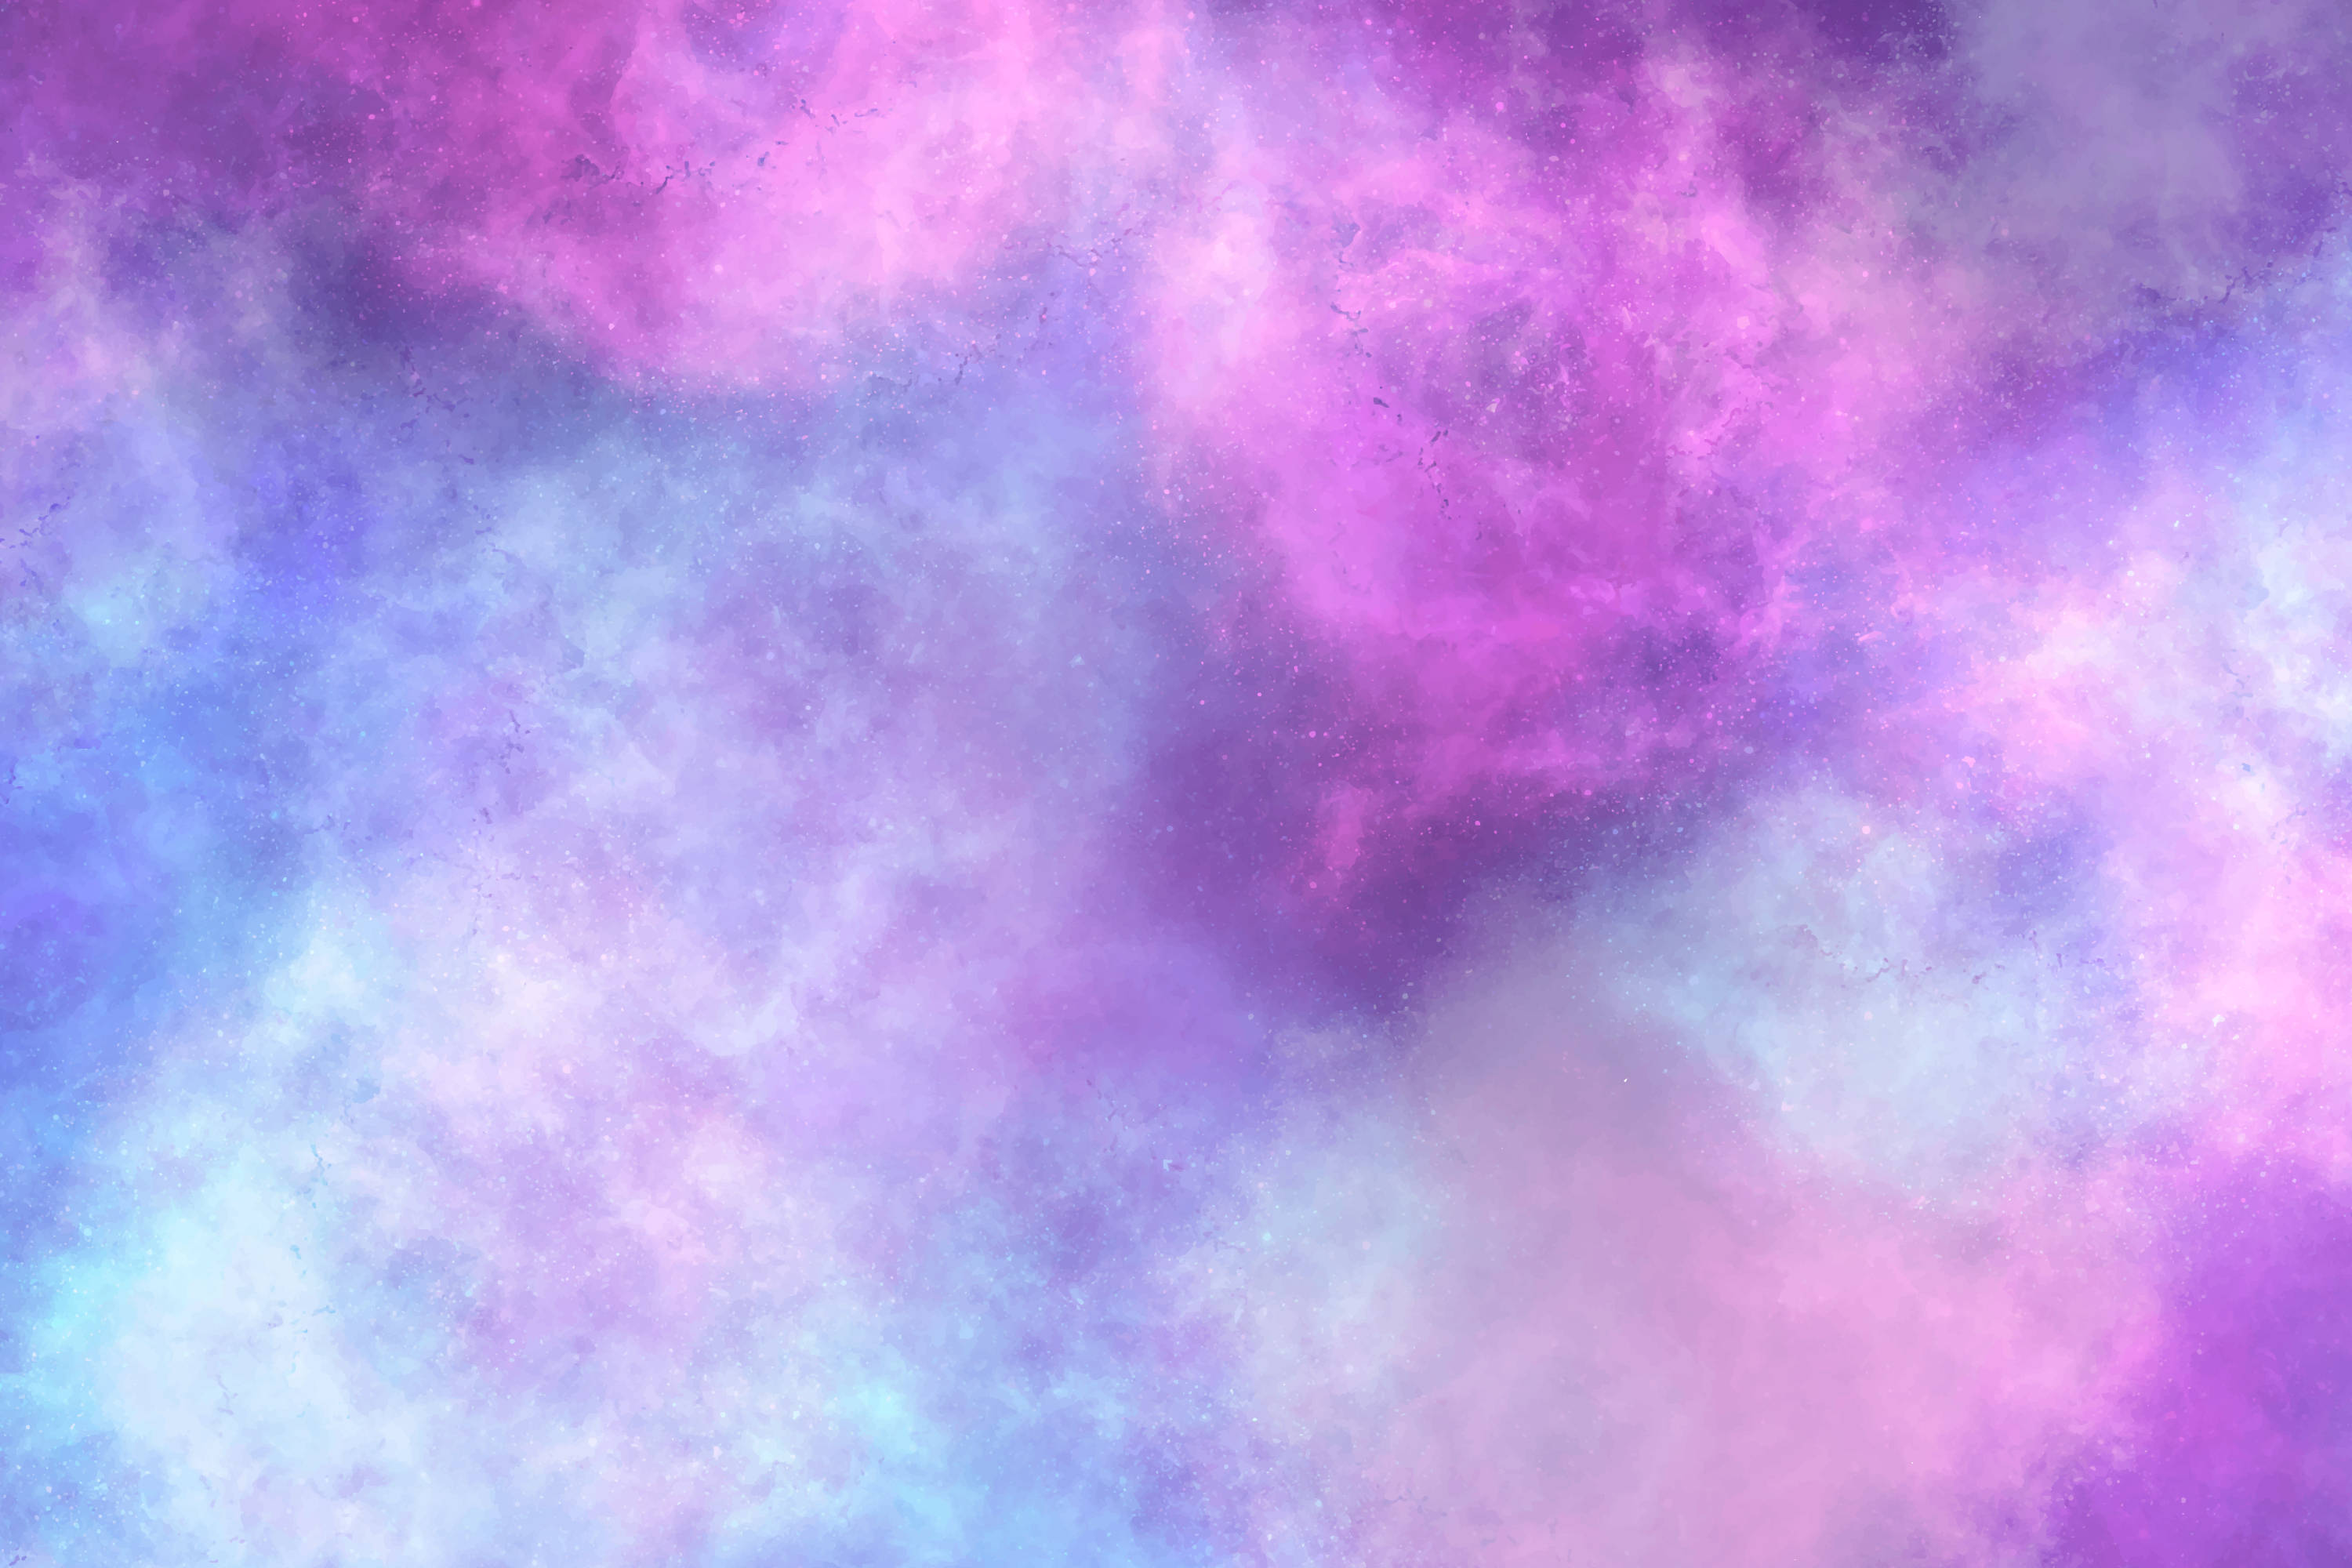 Papelde Parede De Computador Ou Celular: Galáxia De Aquarela Em Tons De Rosa-roxo. Papel de Parede